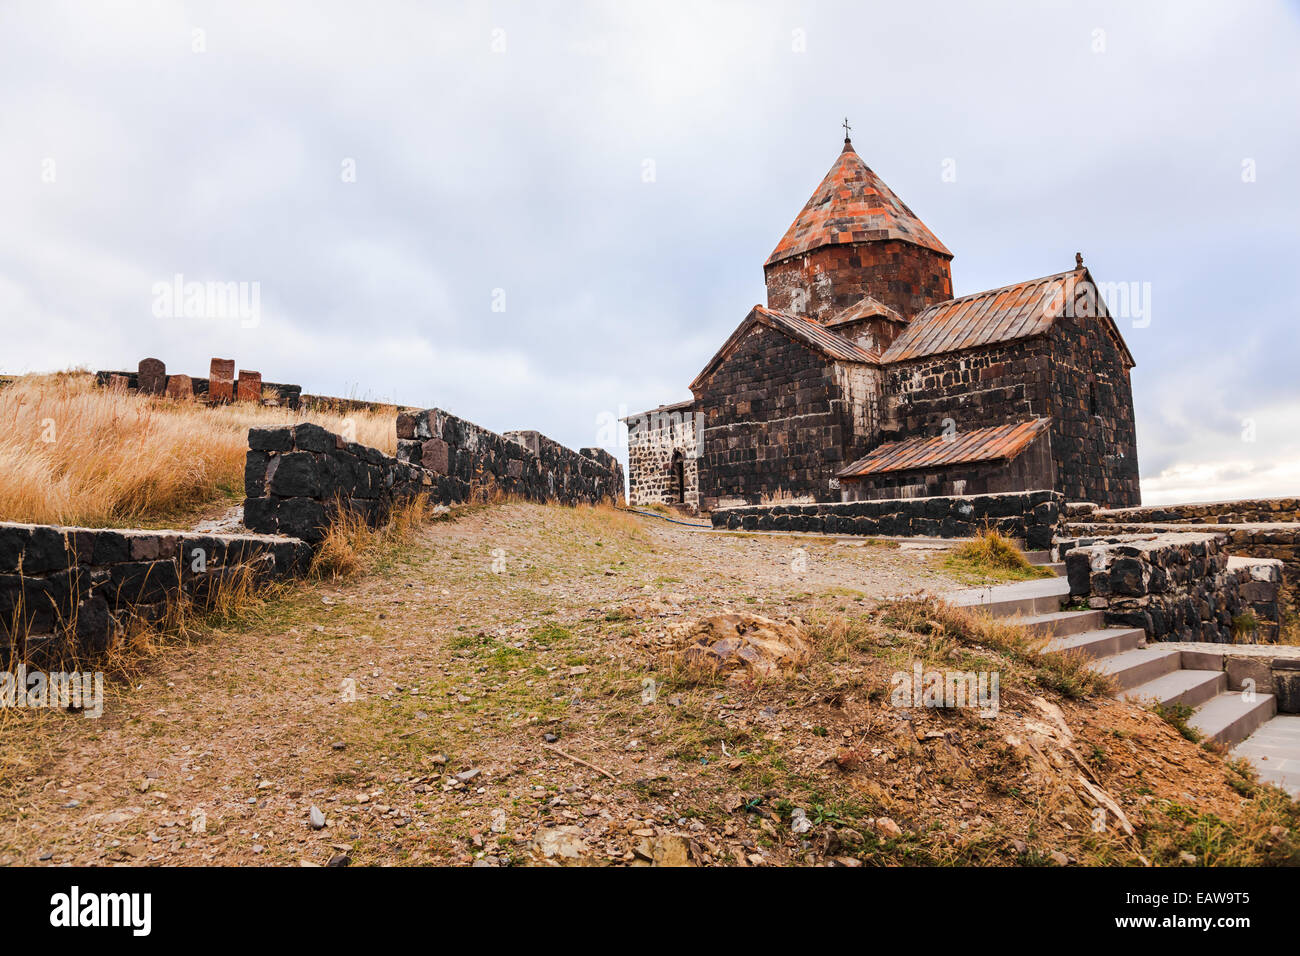 Le monastère de Sevanavank situé sur la rive du lac Sevan dans Gegharkunix Province, l'Arménie Banque D'Images